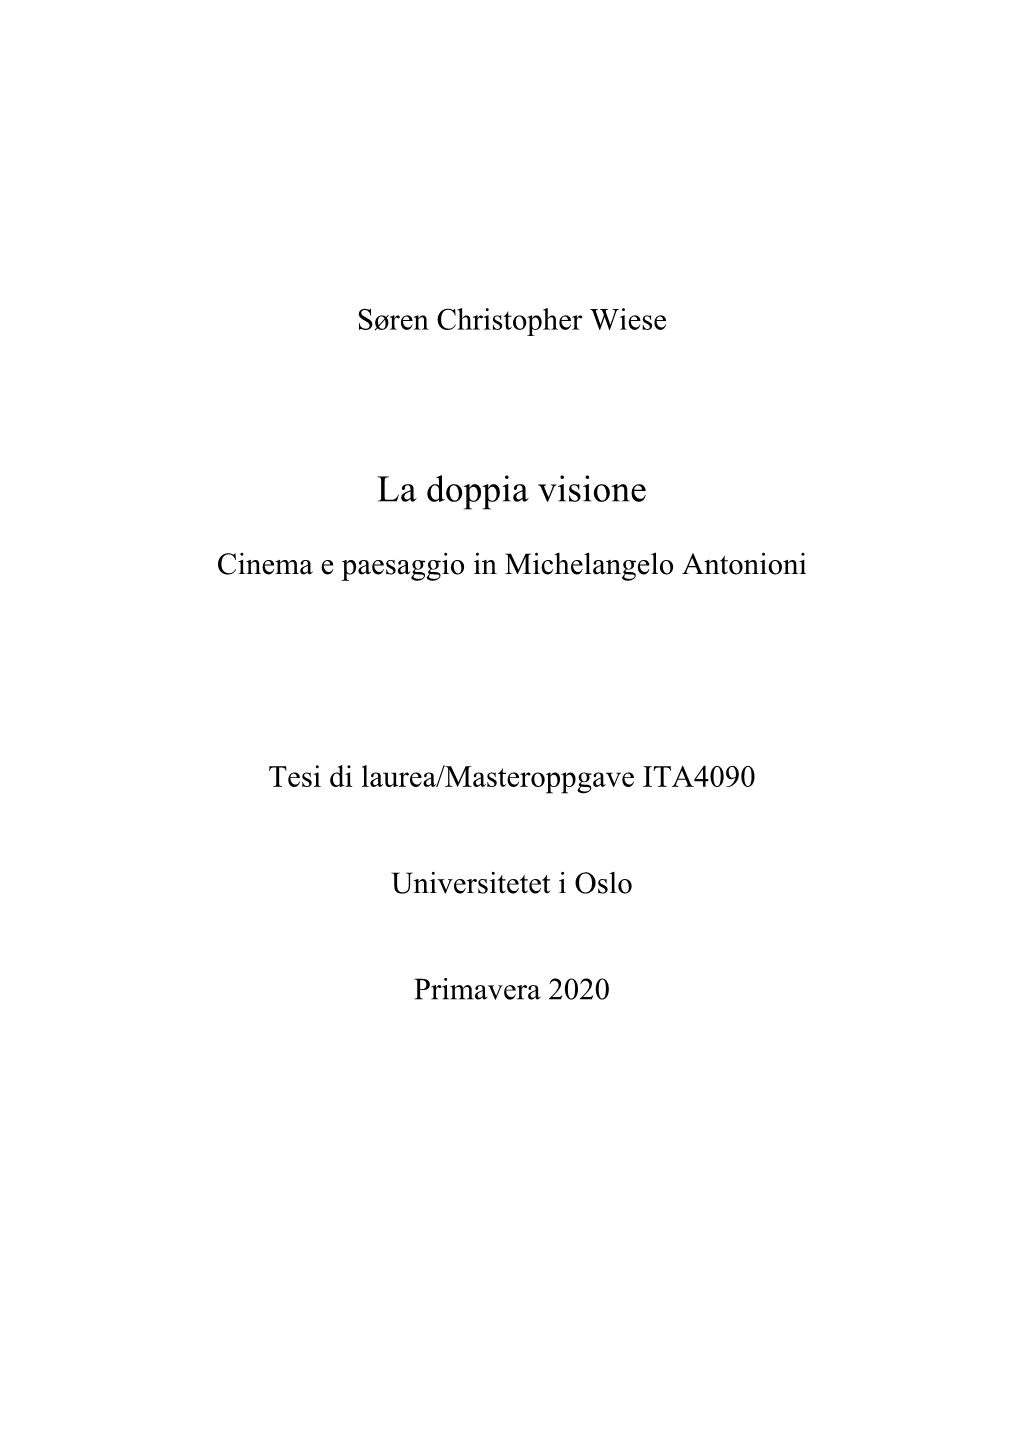 Soren-Wiese--Antonioni.Pdf (607.6Kb)